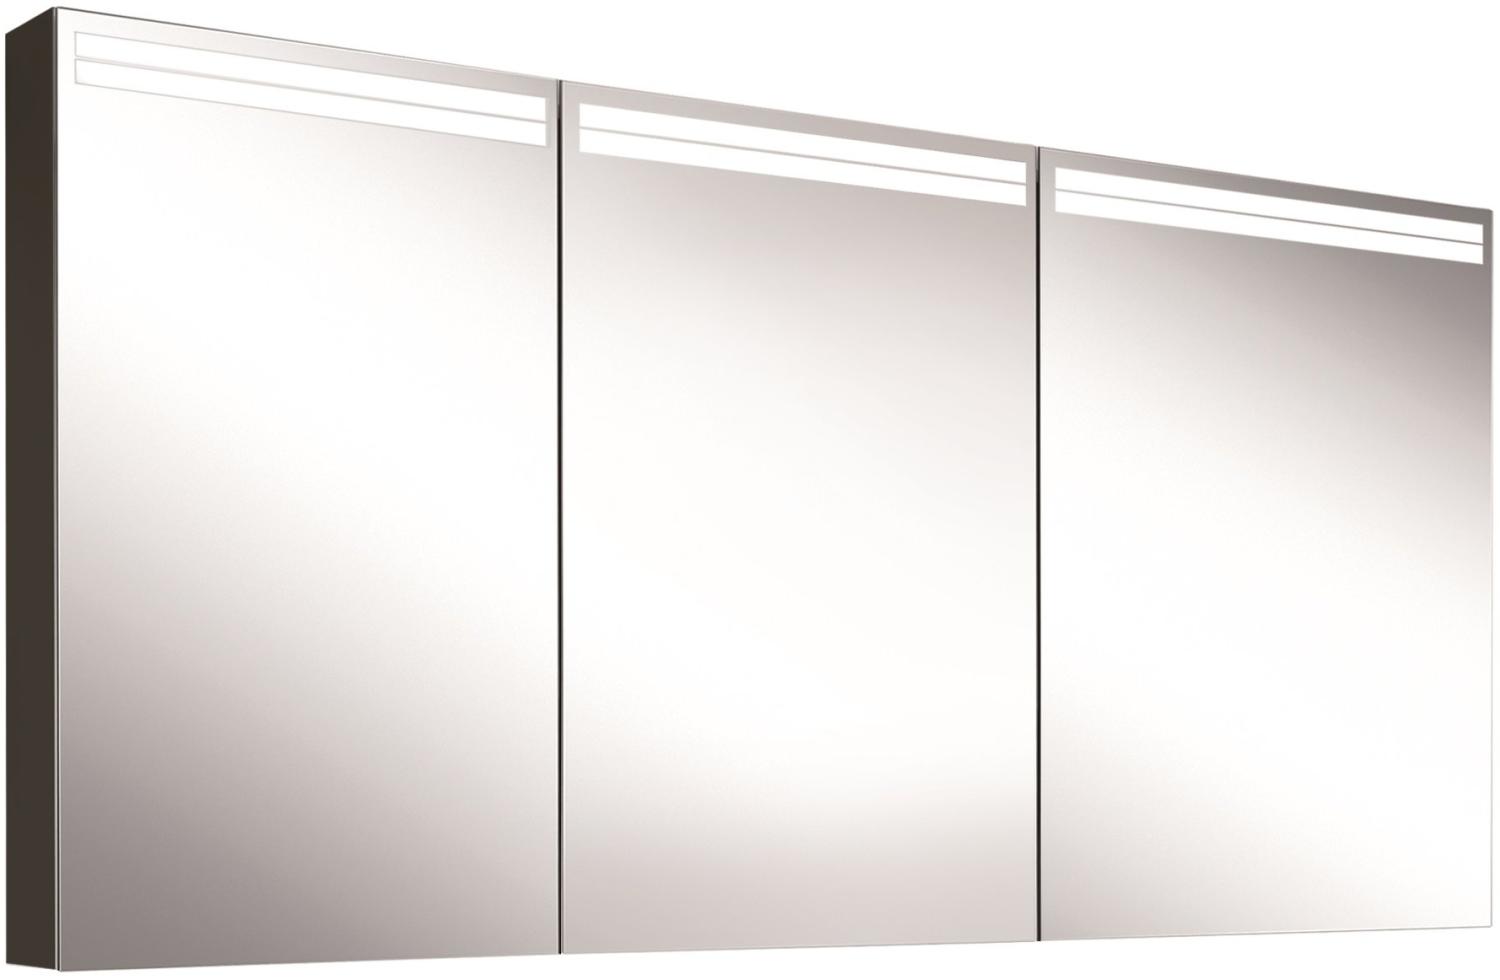 Schneider ARANGALINE LED Lichtspiegelschrank, 3 gleichgrosse Doppelspiegeltüren, 150x70x12cm, 160. 551. 02. 41, Ausführung: EU-Norm/Korpus schwarz matt - 160. 551. 02. 41 Bild 1